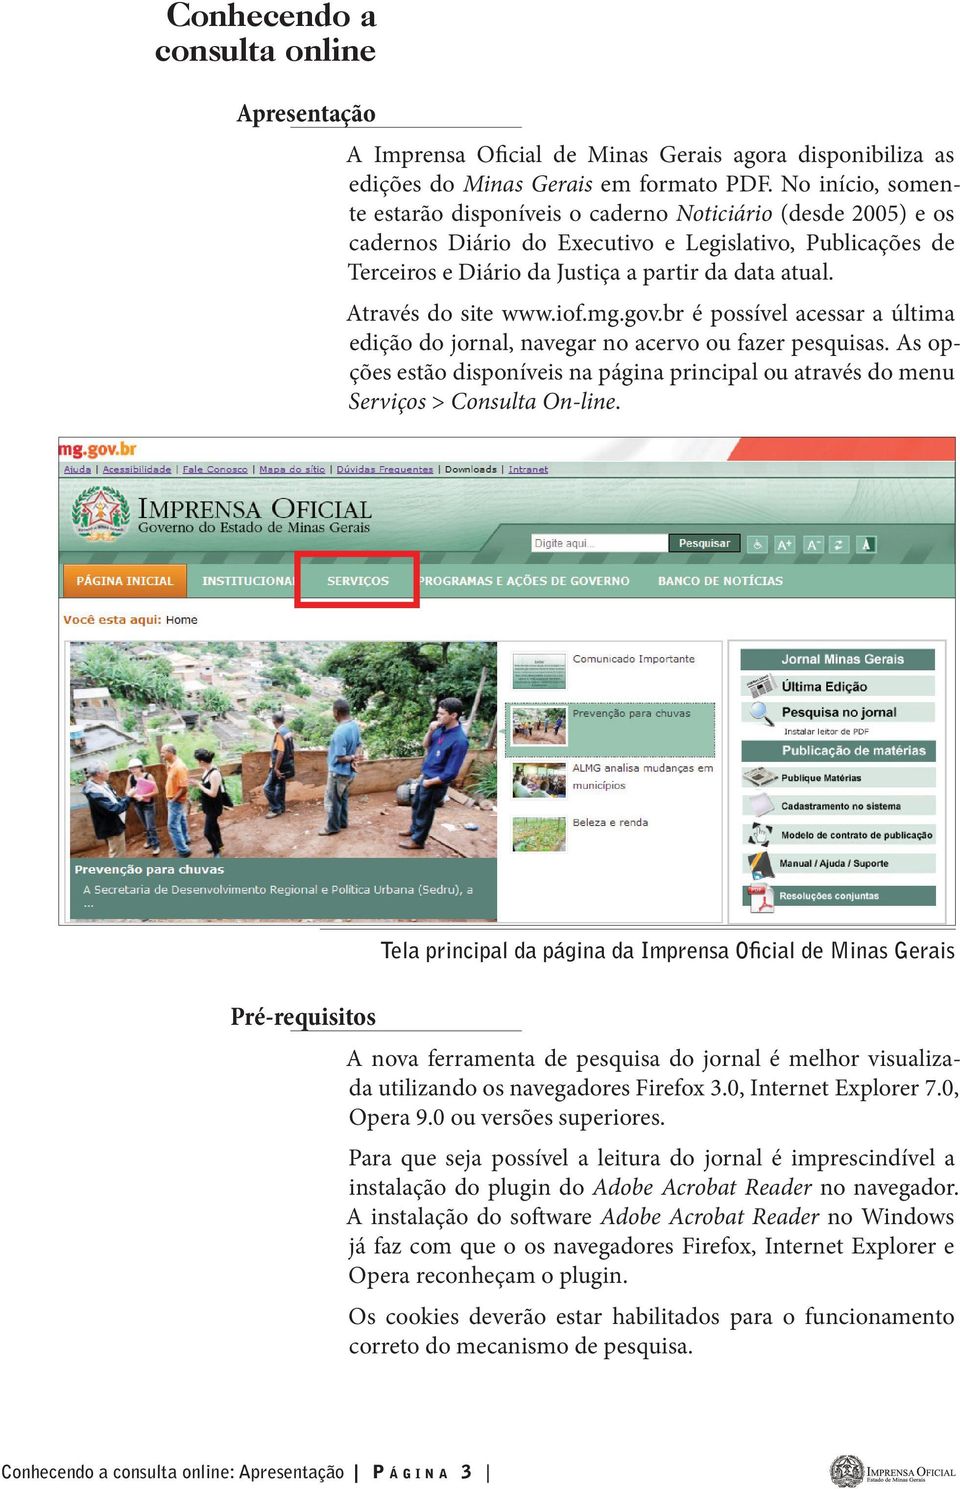 Através do site www.iof.mg.gov.br é possível acessar a última edição do jornal, navegar no acervo ou fazer pesquisas.